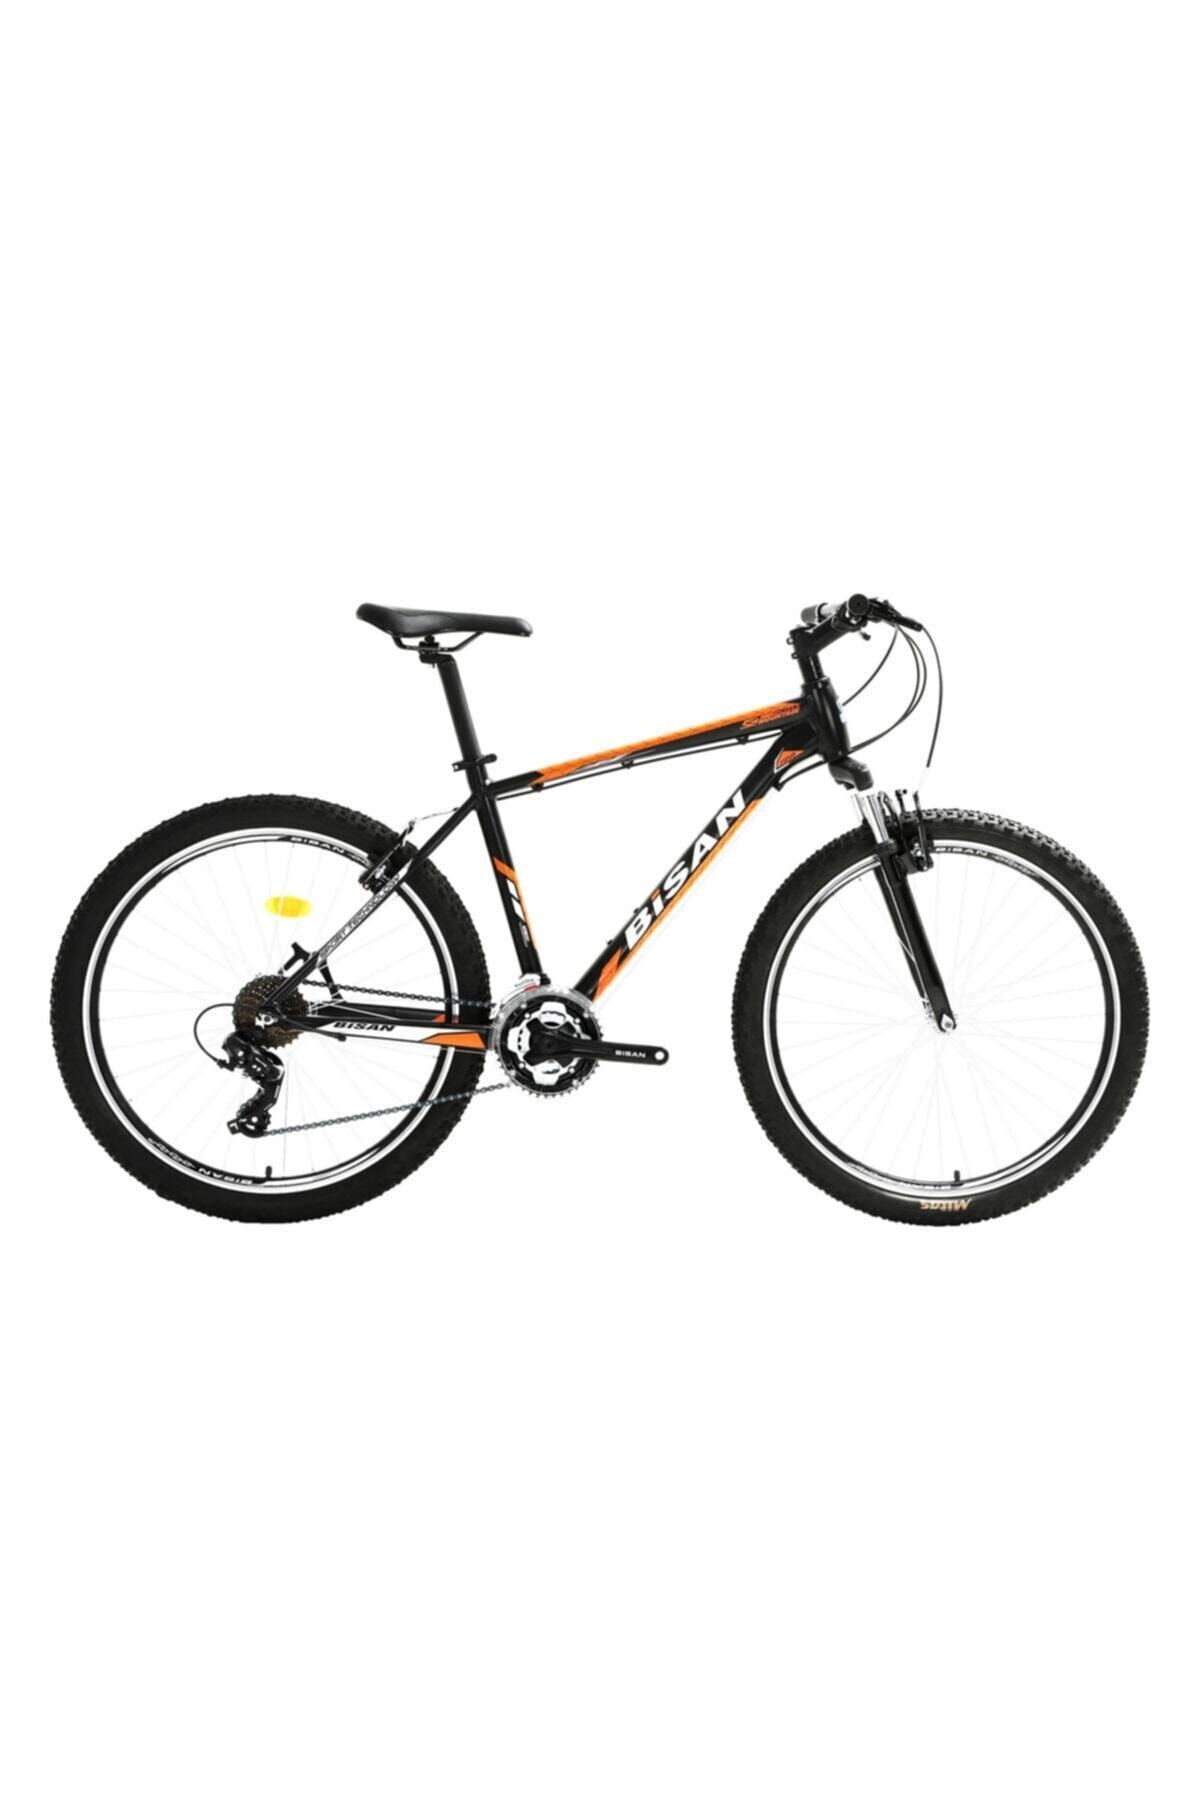 Bisan Siyah-turuncu Mtx 7050  29 Jant  Dağ Bisikleti